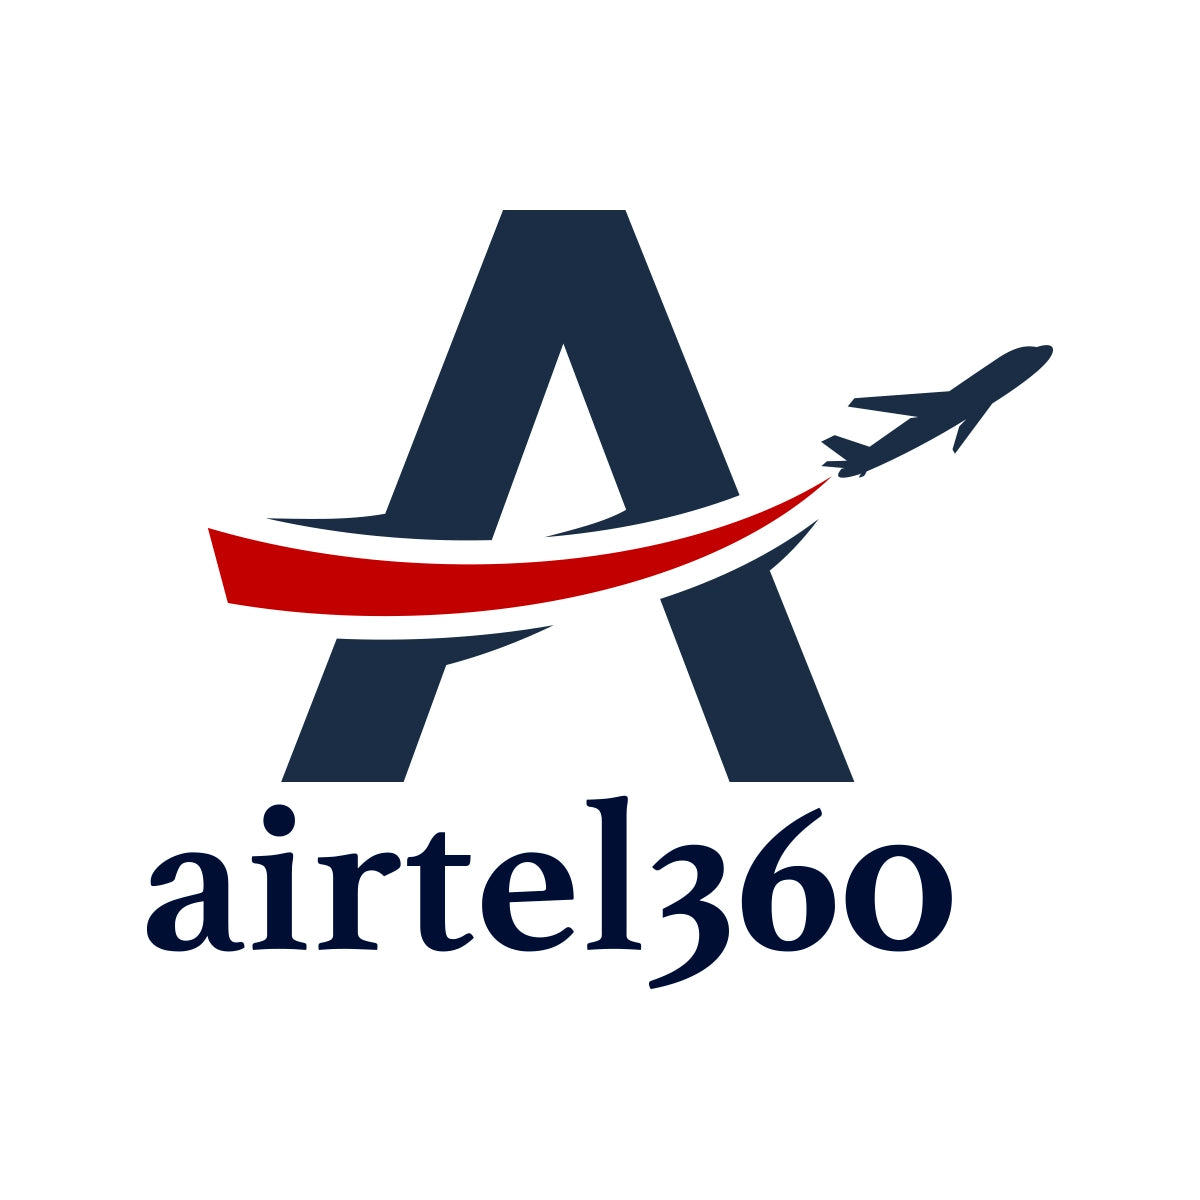 airtel360.com